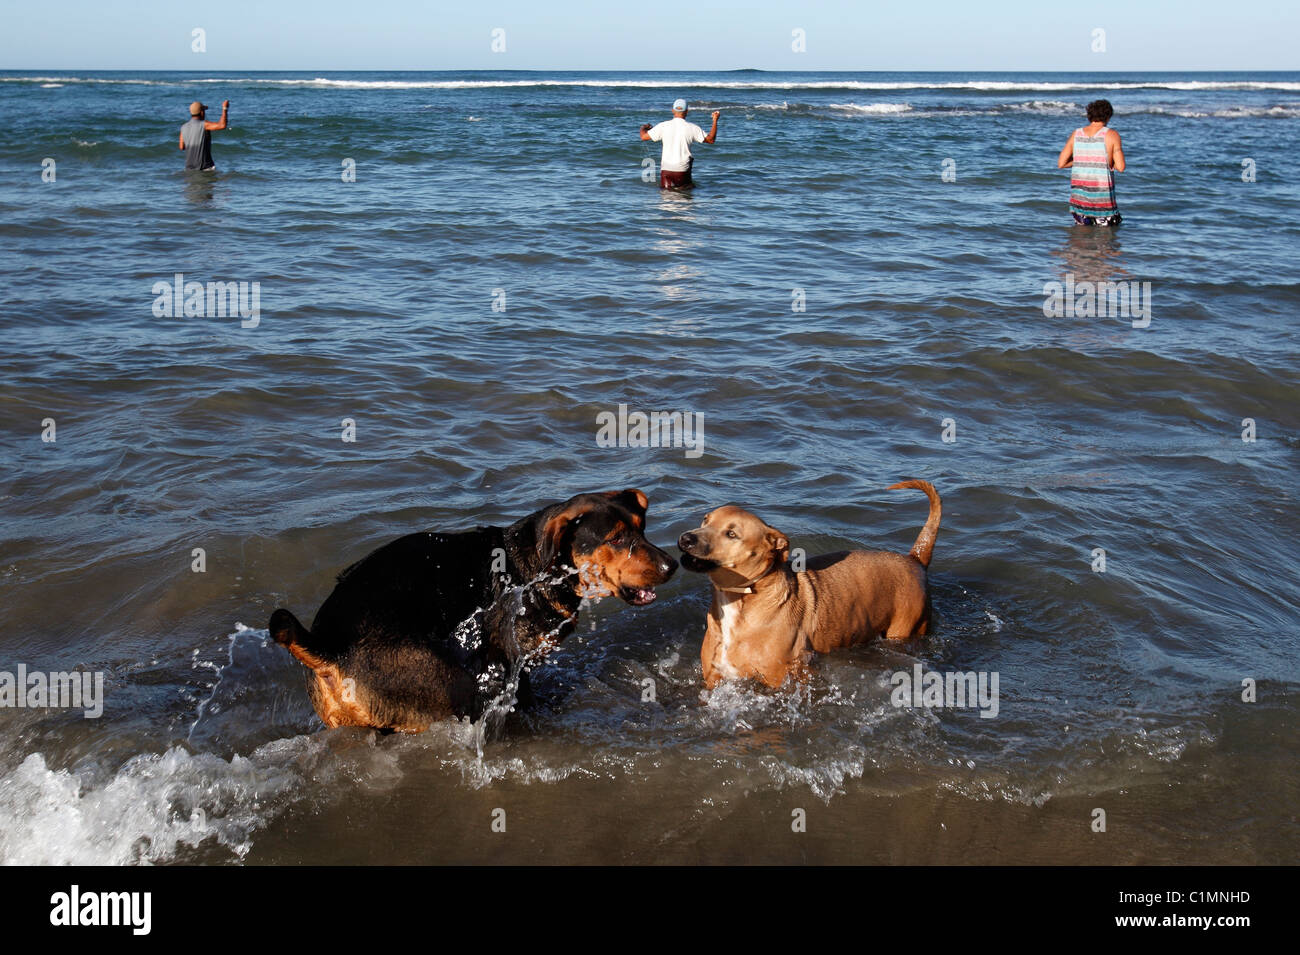 Les chiens jouent dans le surf que les pêcheurs locaux avec leurs lignes dans la mer, Playa Avellanas, Péninsule de Nicoya, Costa Rica Banque D'Images